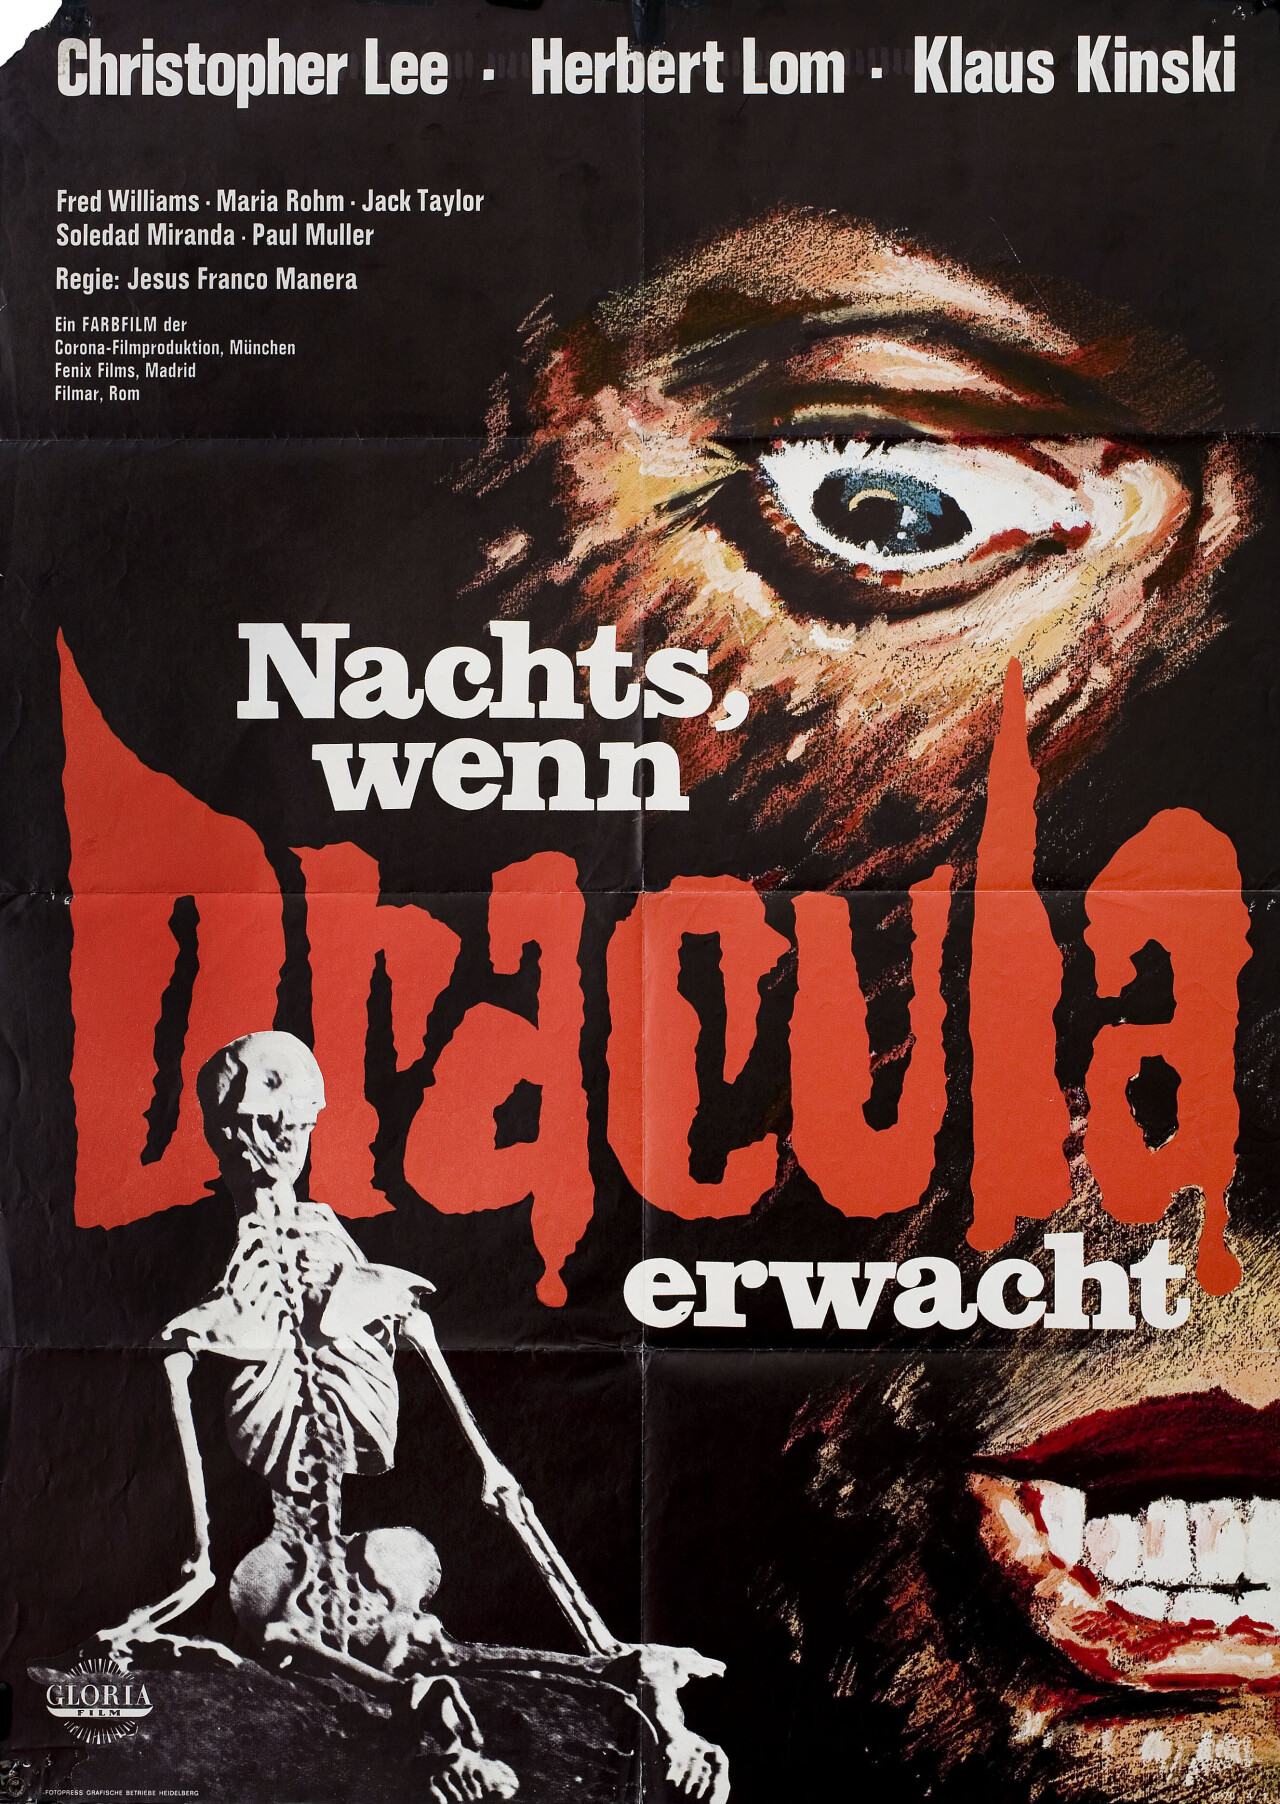 Граф Дракула (Count Dracula, 1970), режиссёр Хесус Франко, немецкий (ФРГ) постер к фильму (ужасы, 1970 год)_1